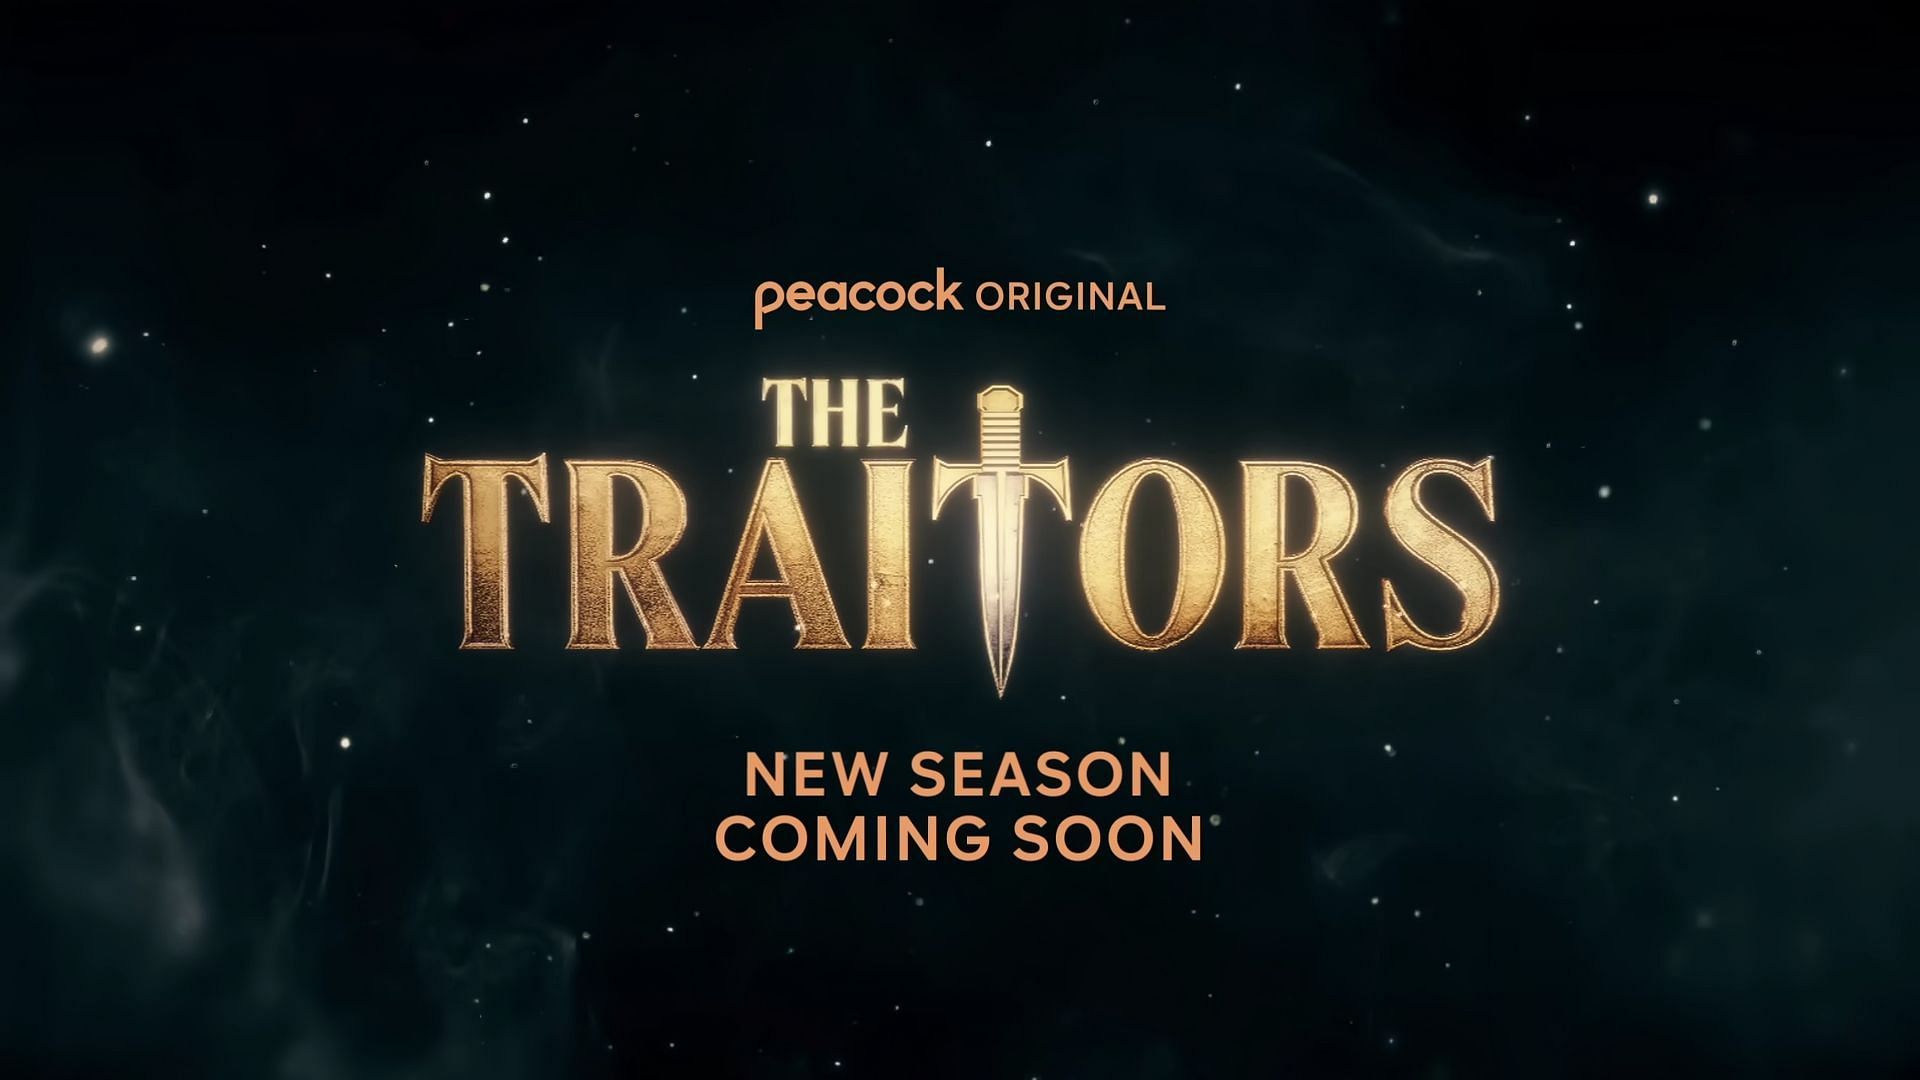 The Traitors season 3 (image via YouTube/Peacock)